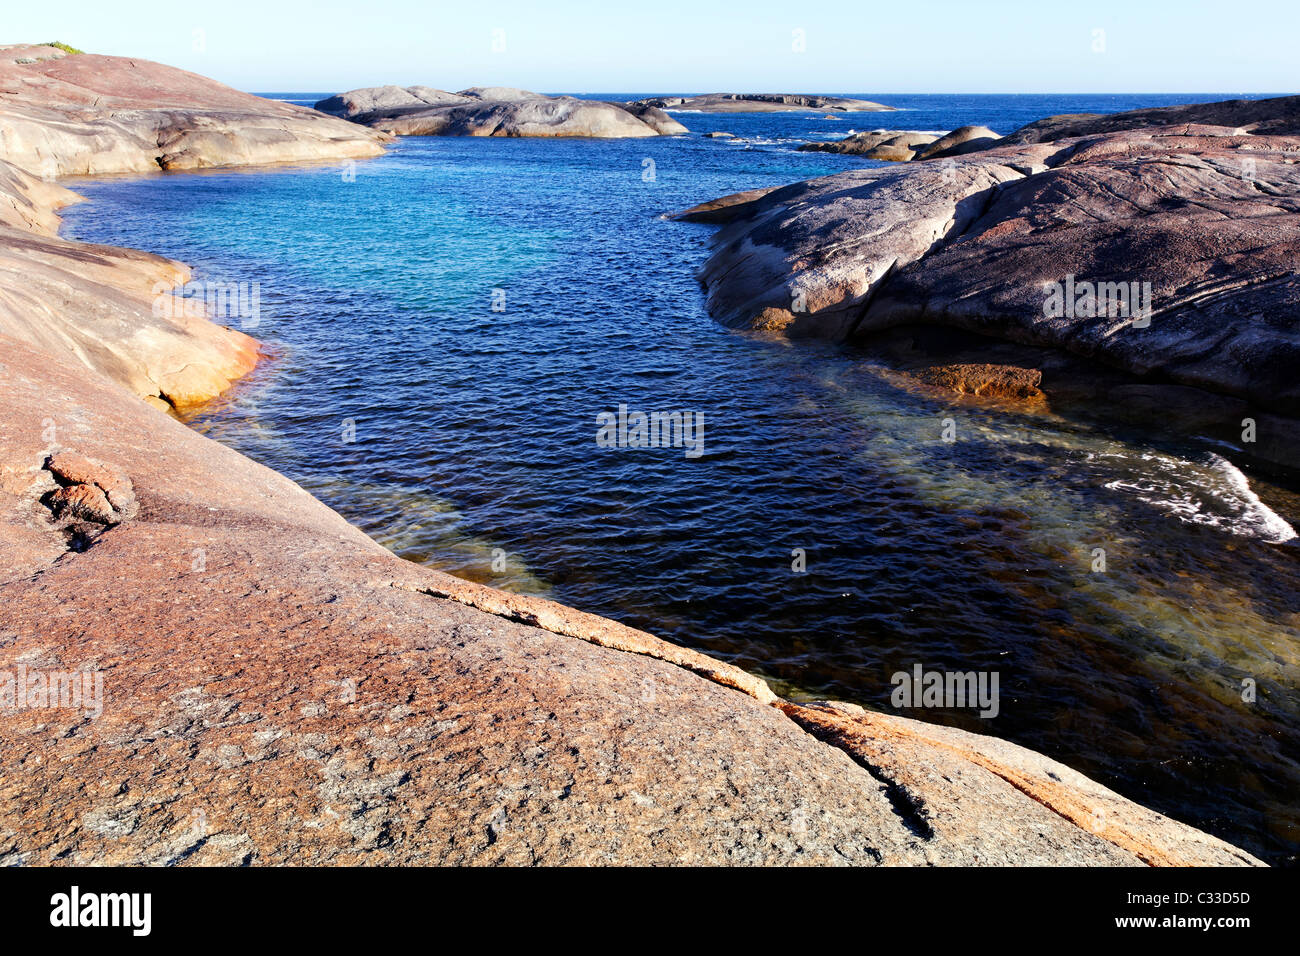 Piedra de granito costa entre rocas y elefantes verdes piscina cerca de Dinamarca, William Bay National Park, en el Suroeste de Australia Foto de stock